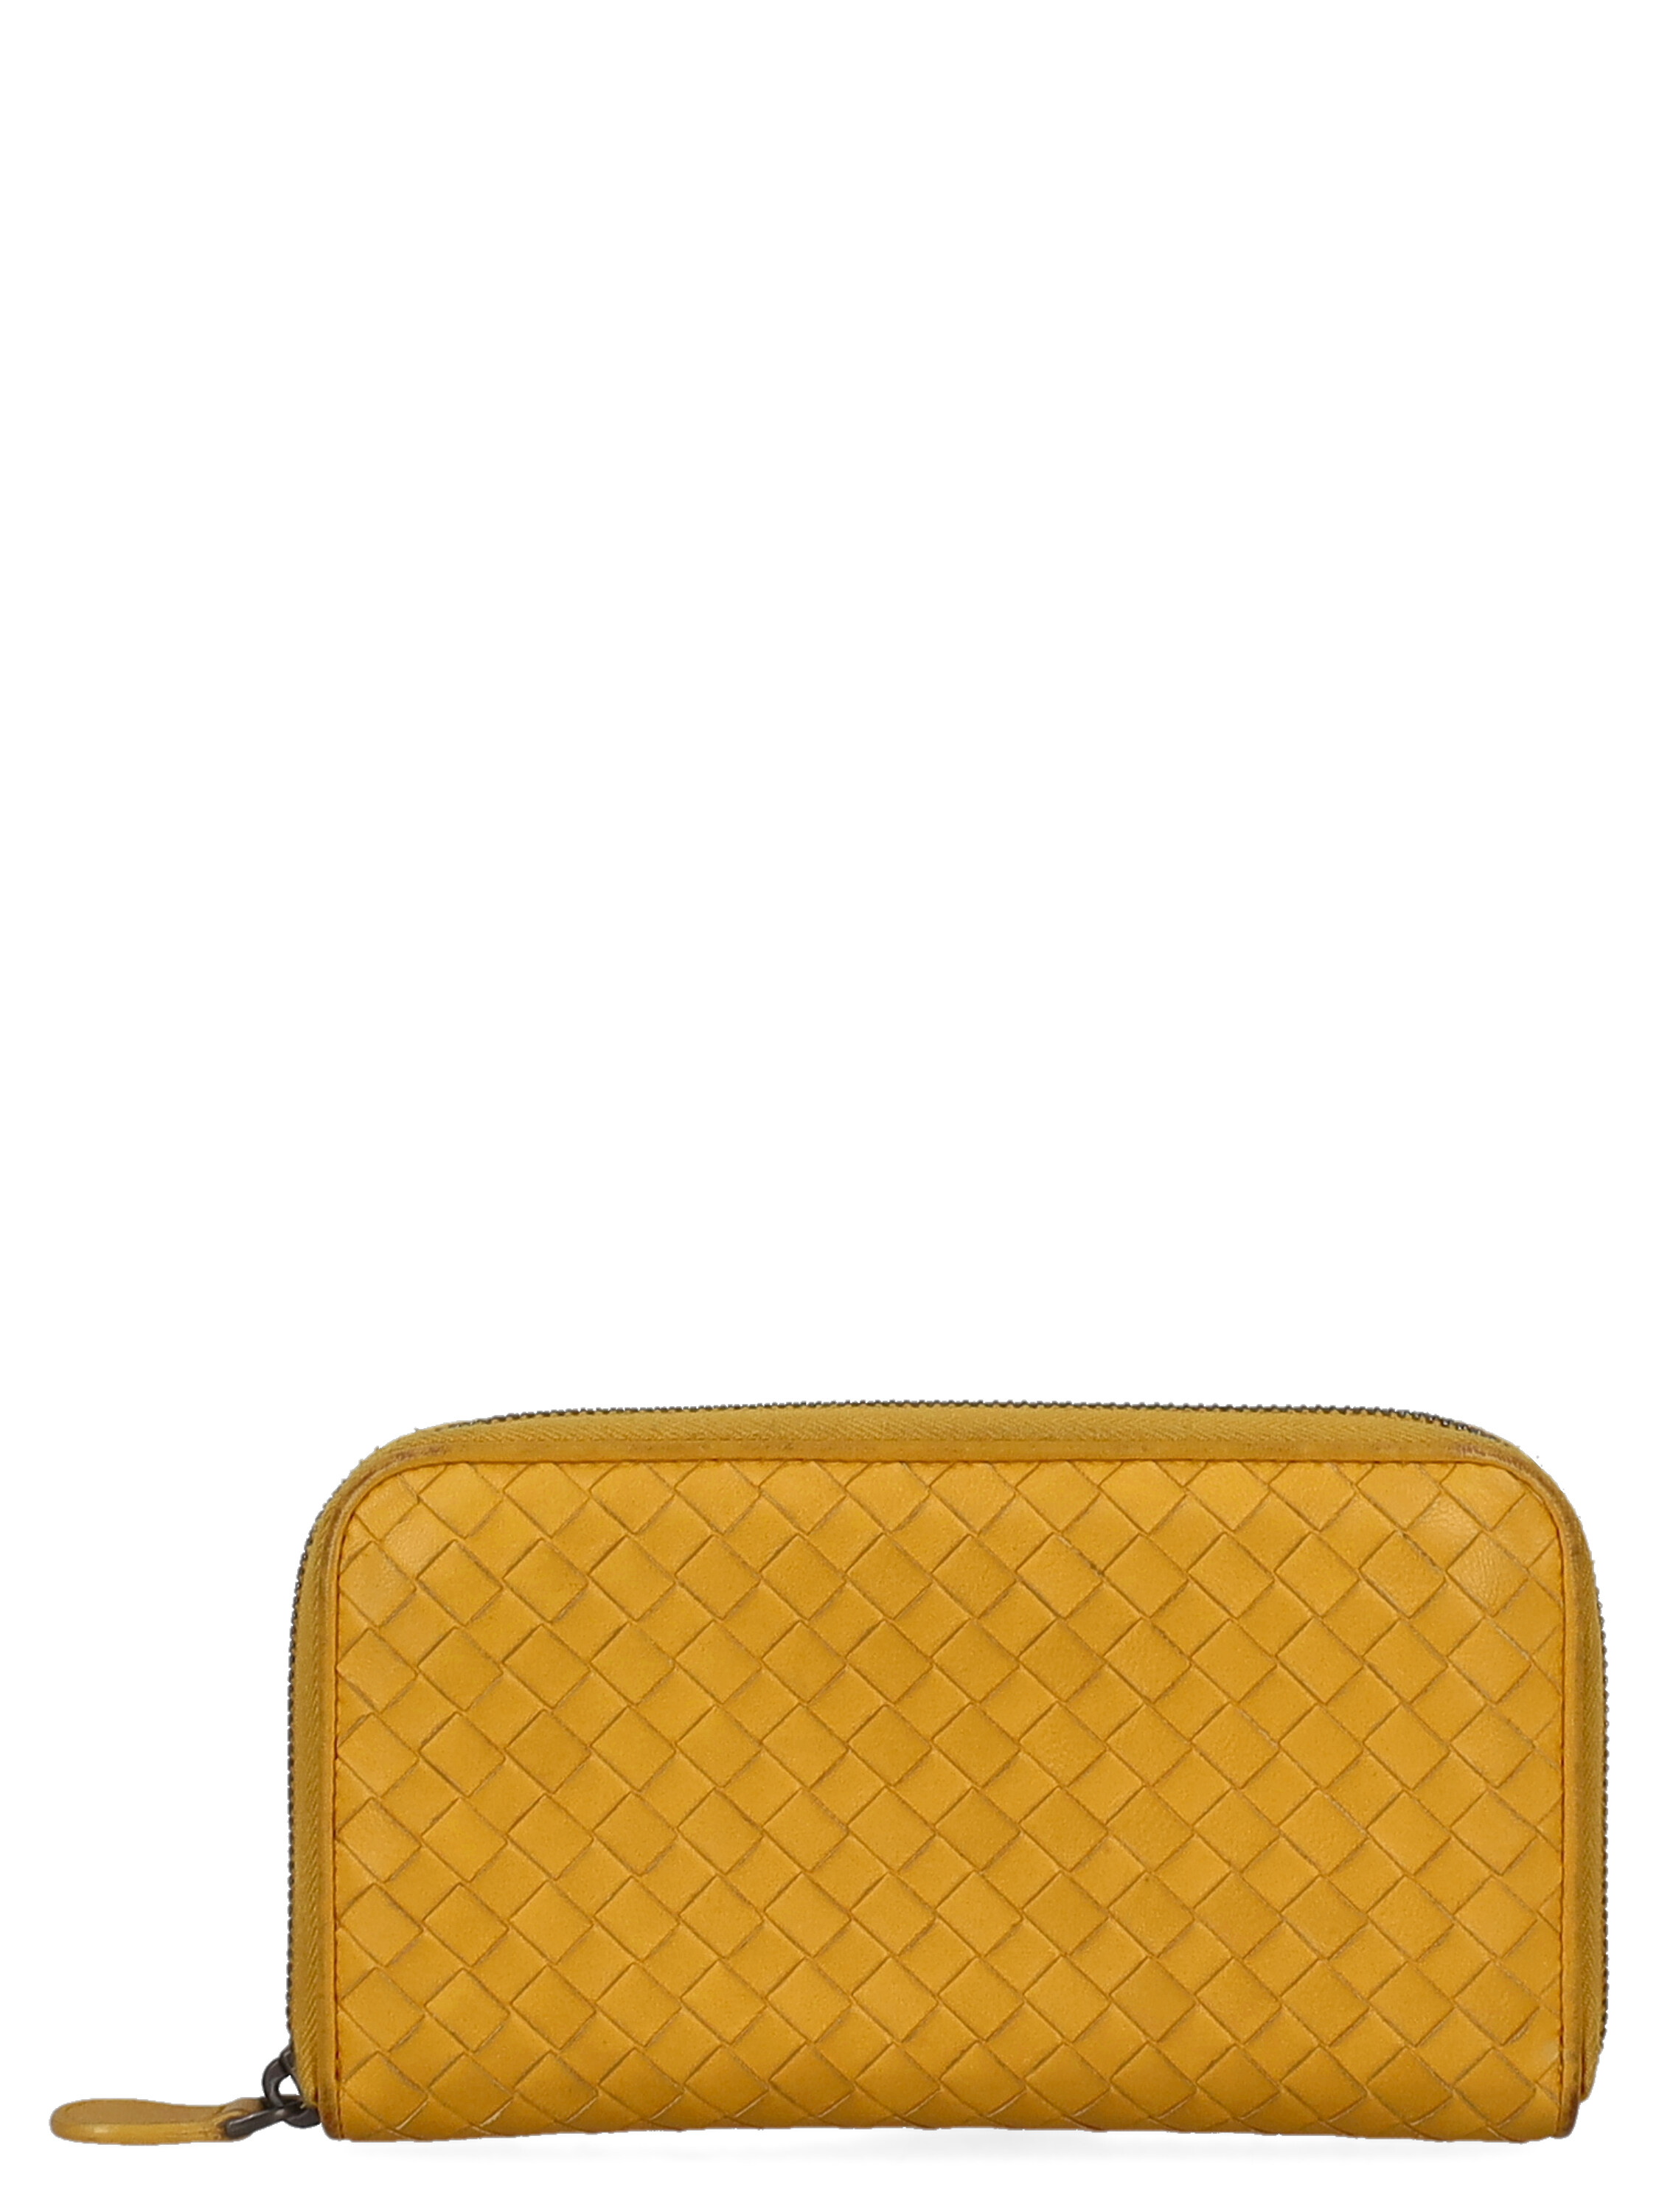 Pre-owned Bottega Veneta Women's Wallets -  - In Yellow Leather